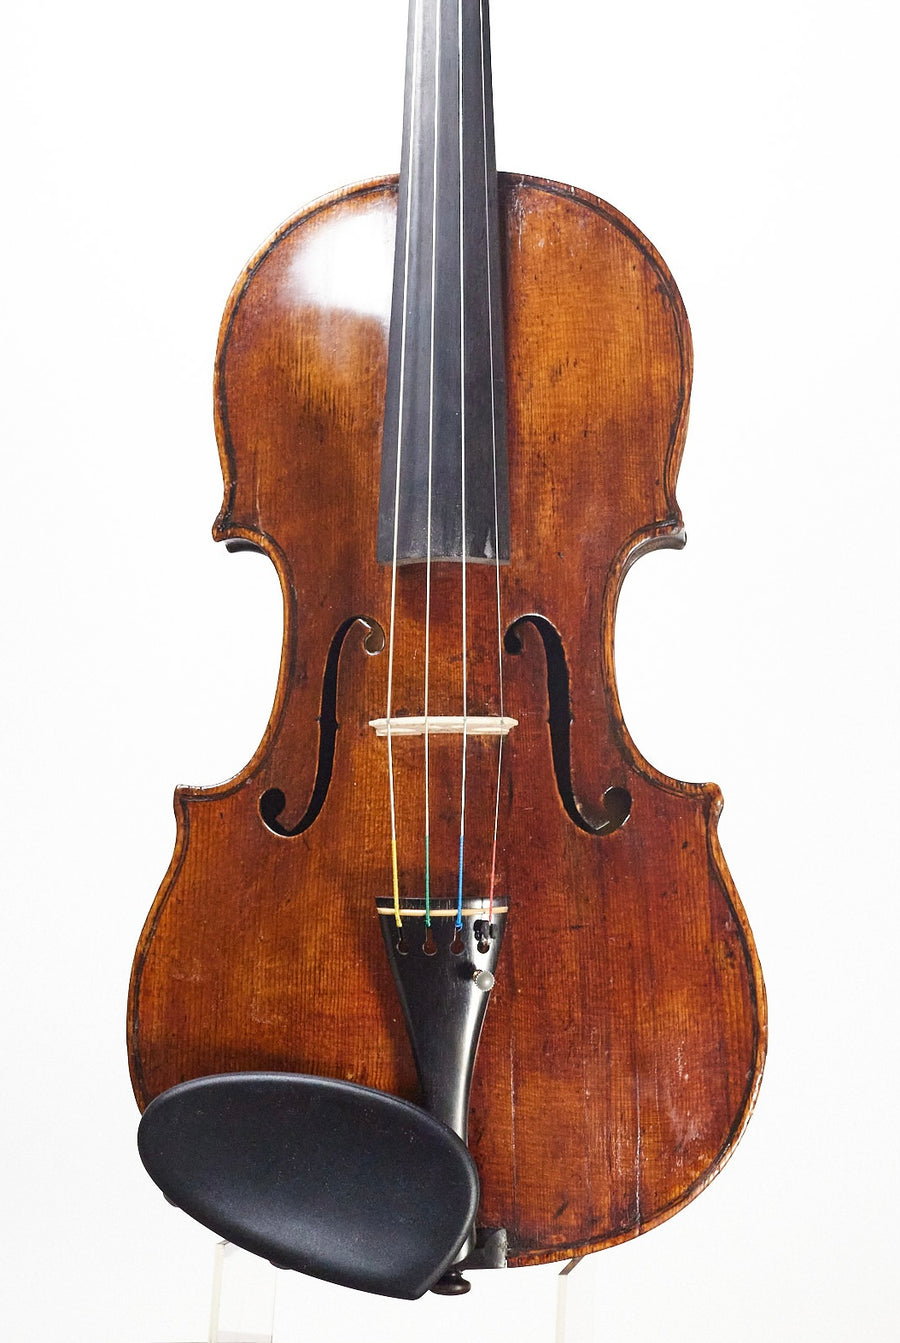 A Rare Violin by Giuseppe & Antonio Gagliano, 1798. (Composite)